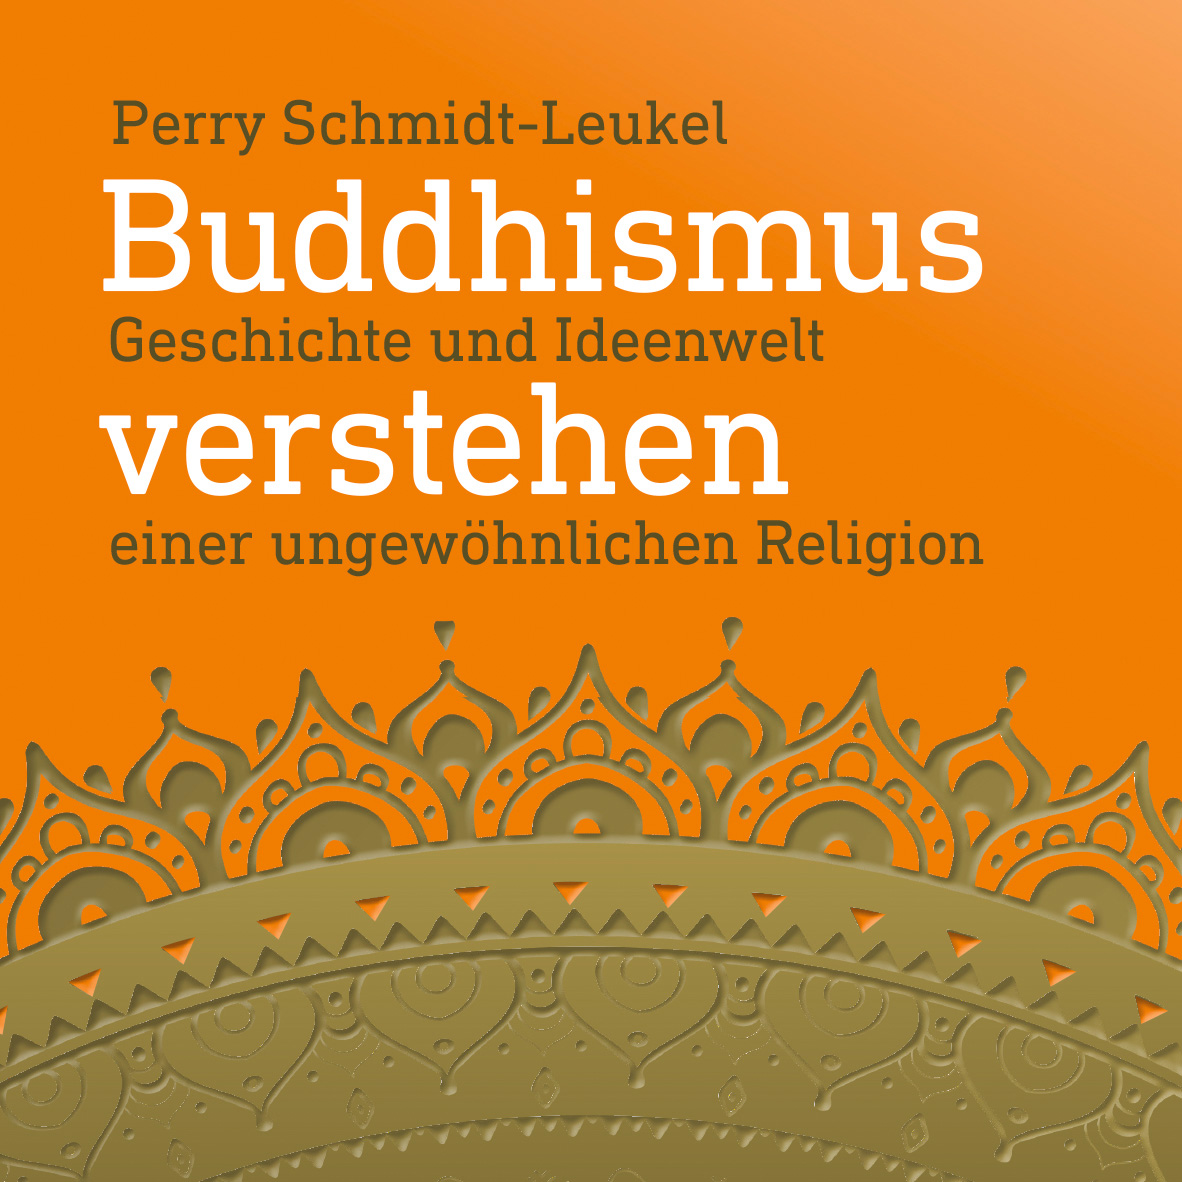 News Buch Schmidt-leukel Buddhismus Verstehen 1 1